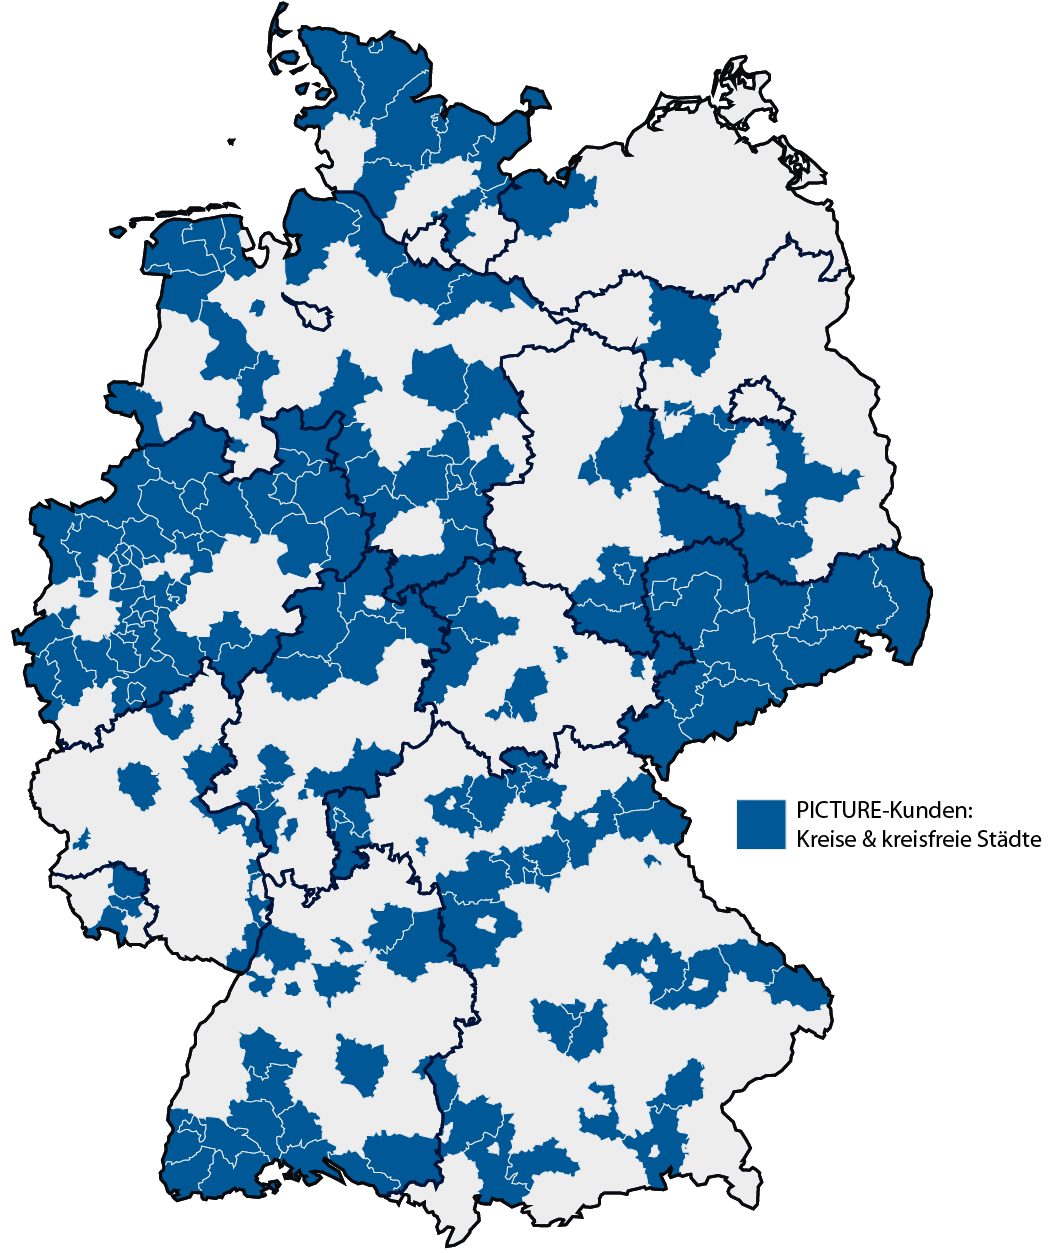 Deutschlandkarte, auf der alle Landkreise und kreisfreie markiert sind, die Kunden von PICTURE sind.